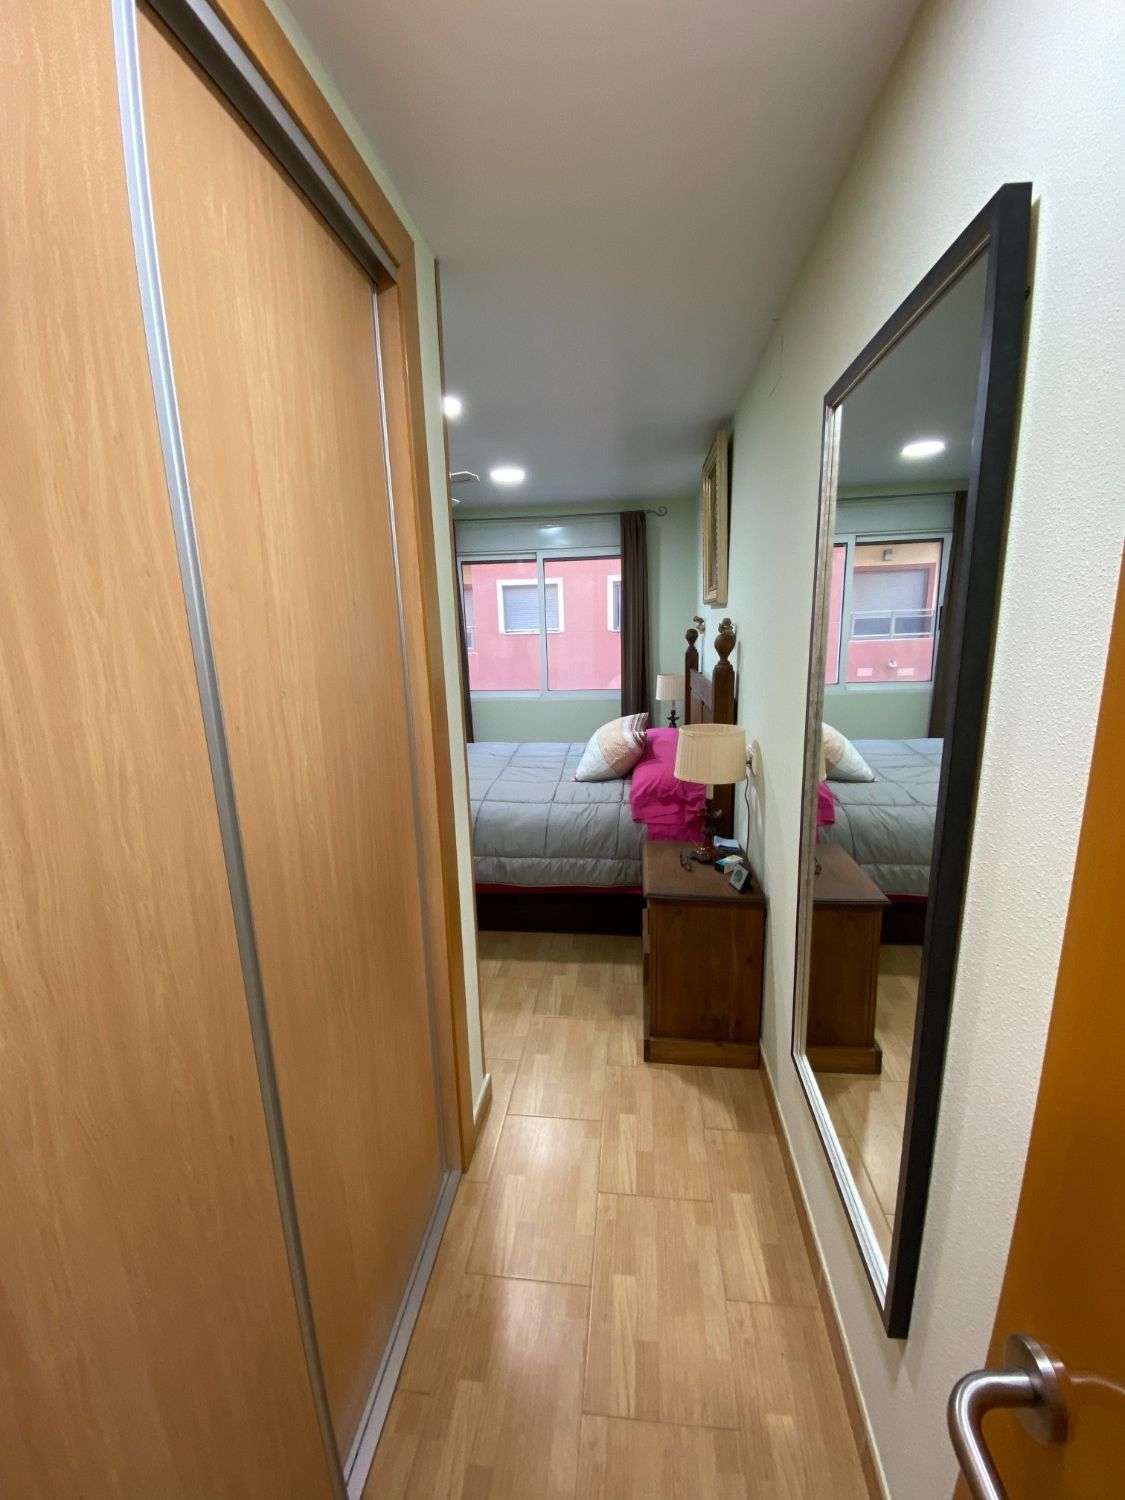 Wohnung mit zwei Schlafzimmern, einem Badezimmer und Wohnzimmer-Esszimmer-Küche.